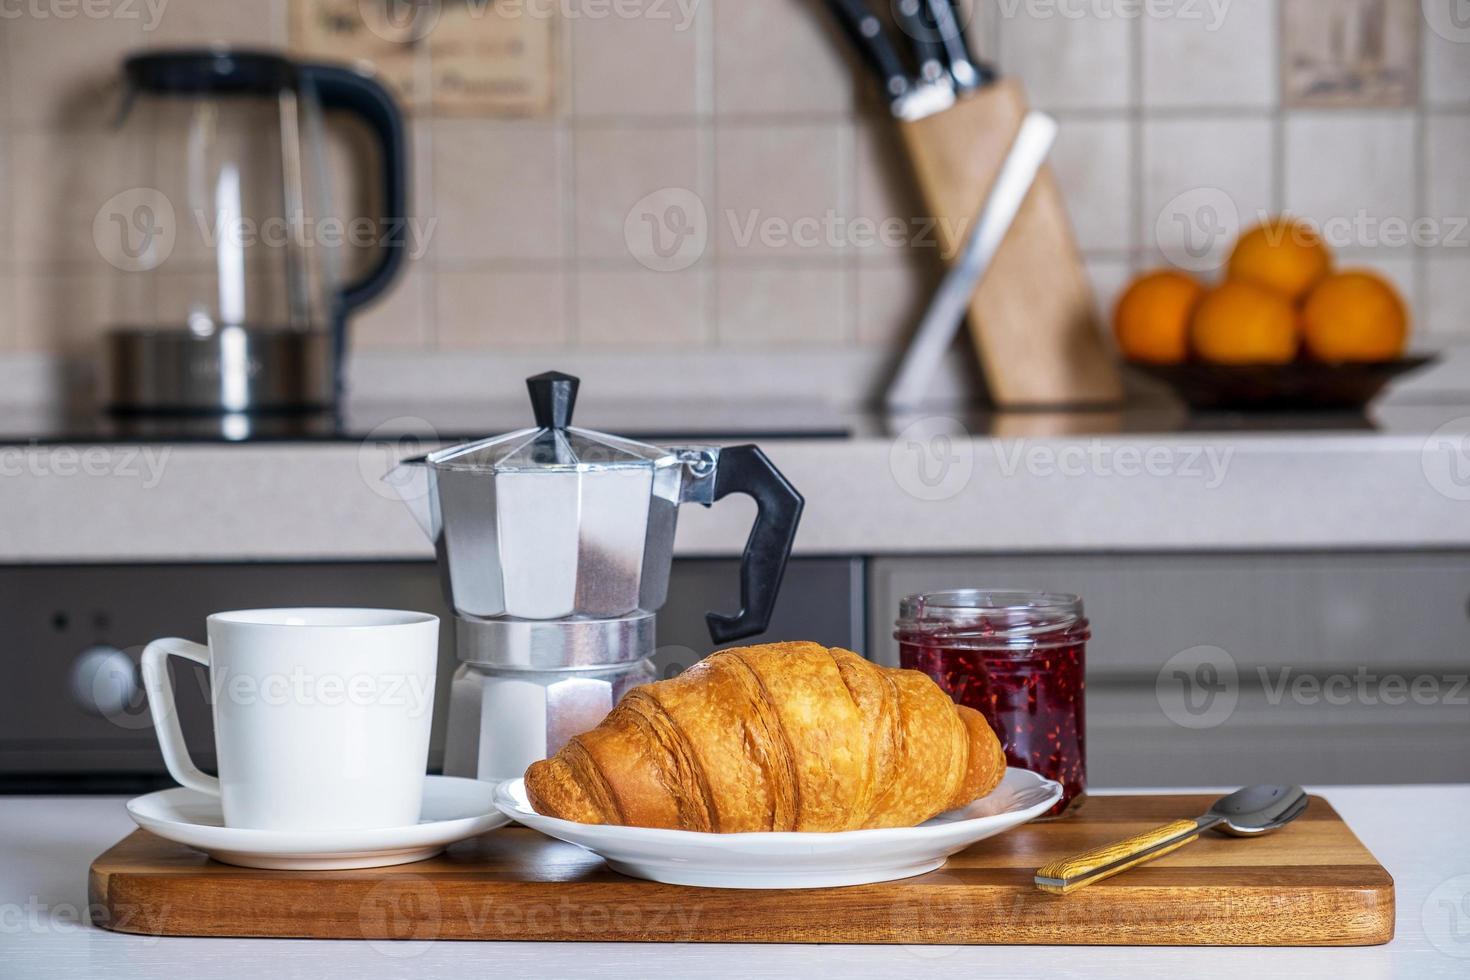 servera på serveringsbräda med kaffe, croissant och sylt foto